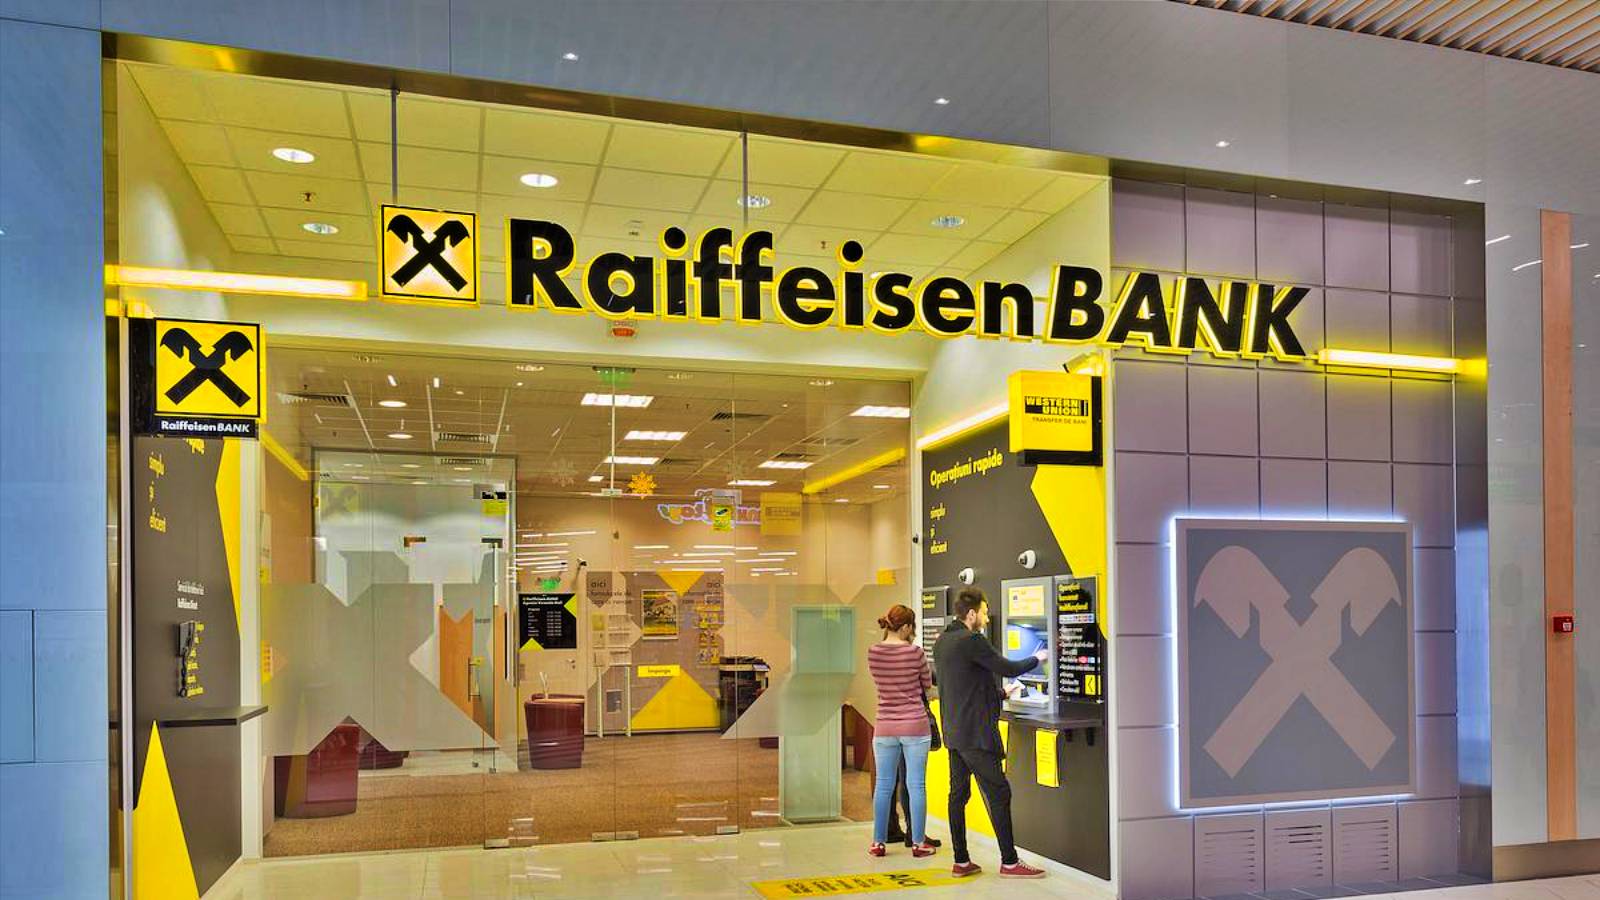 Raiffeisen Bank reparat